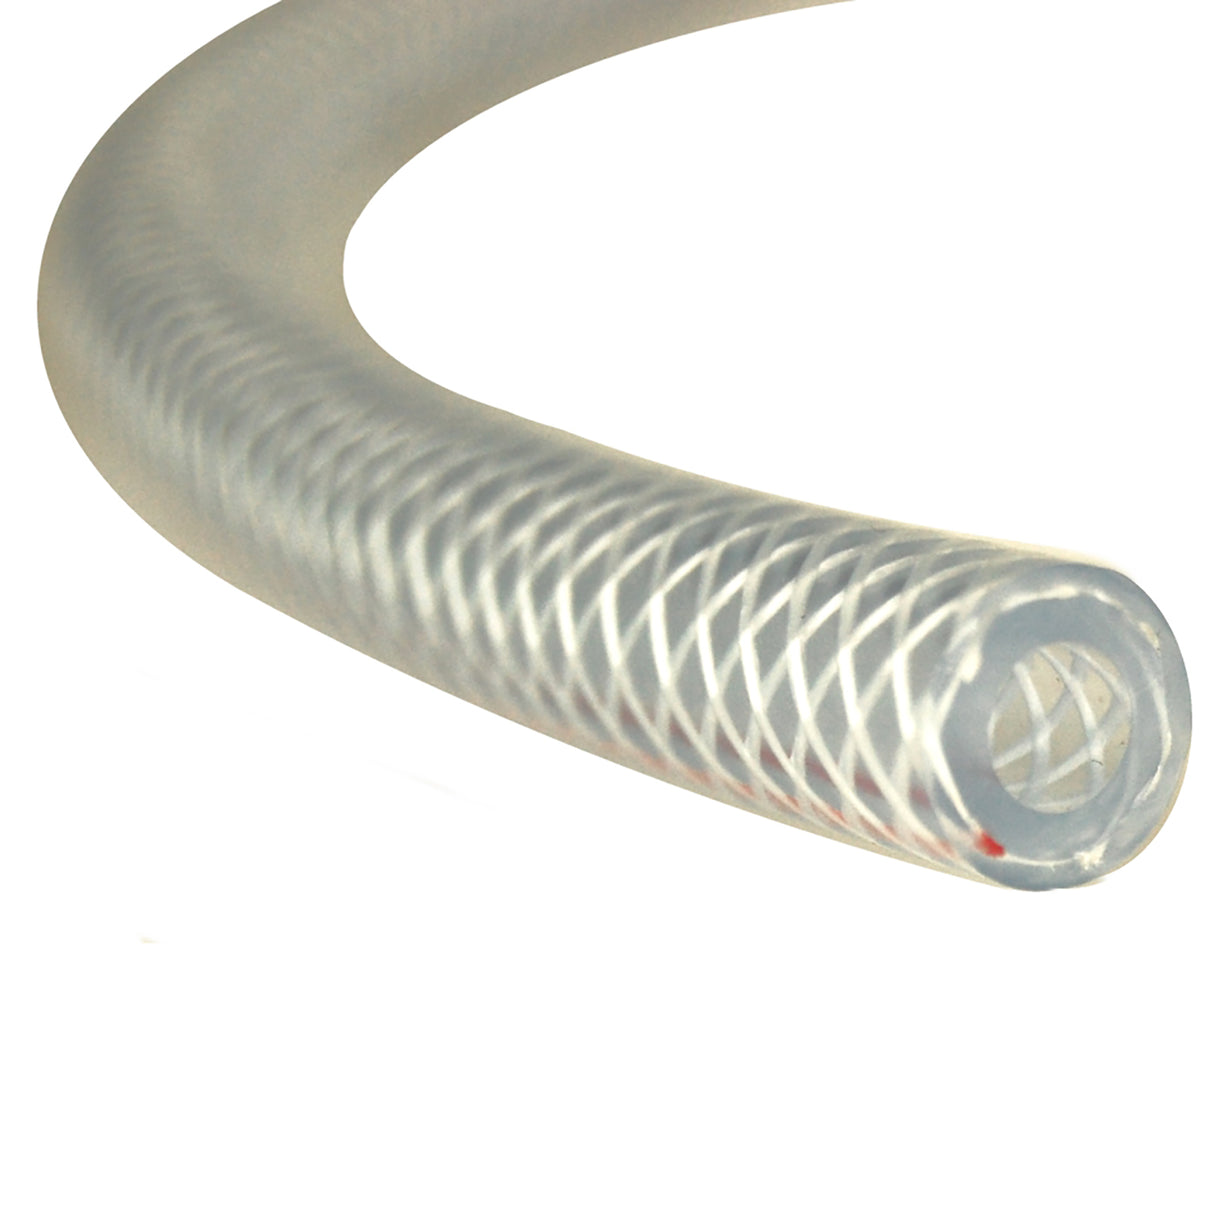 Slangeforsterket 6x3 mm for Rengjøringsmiddel - Dyppemiddel